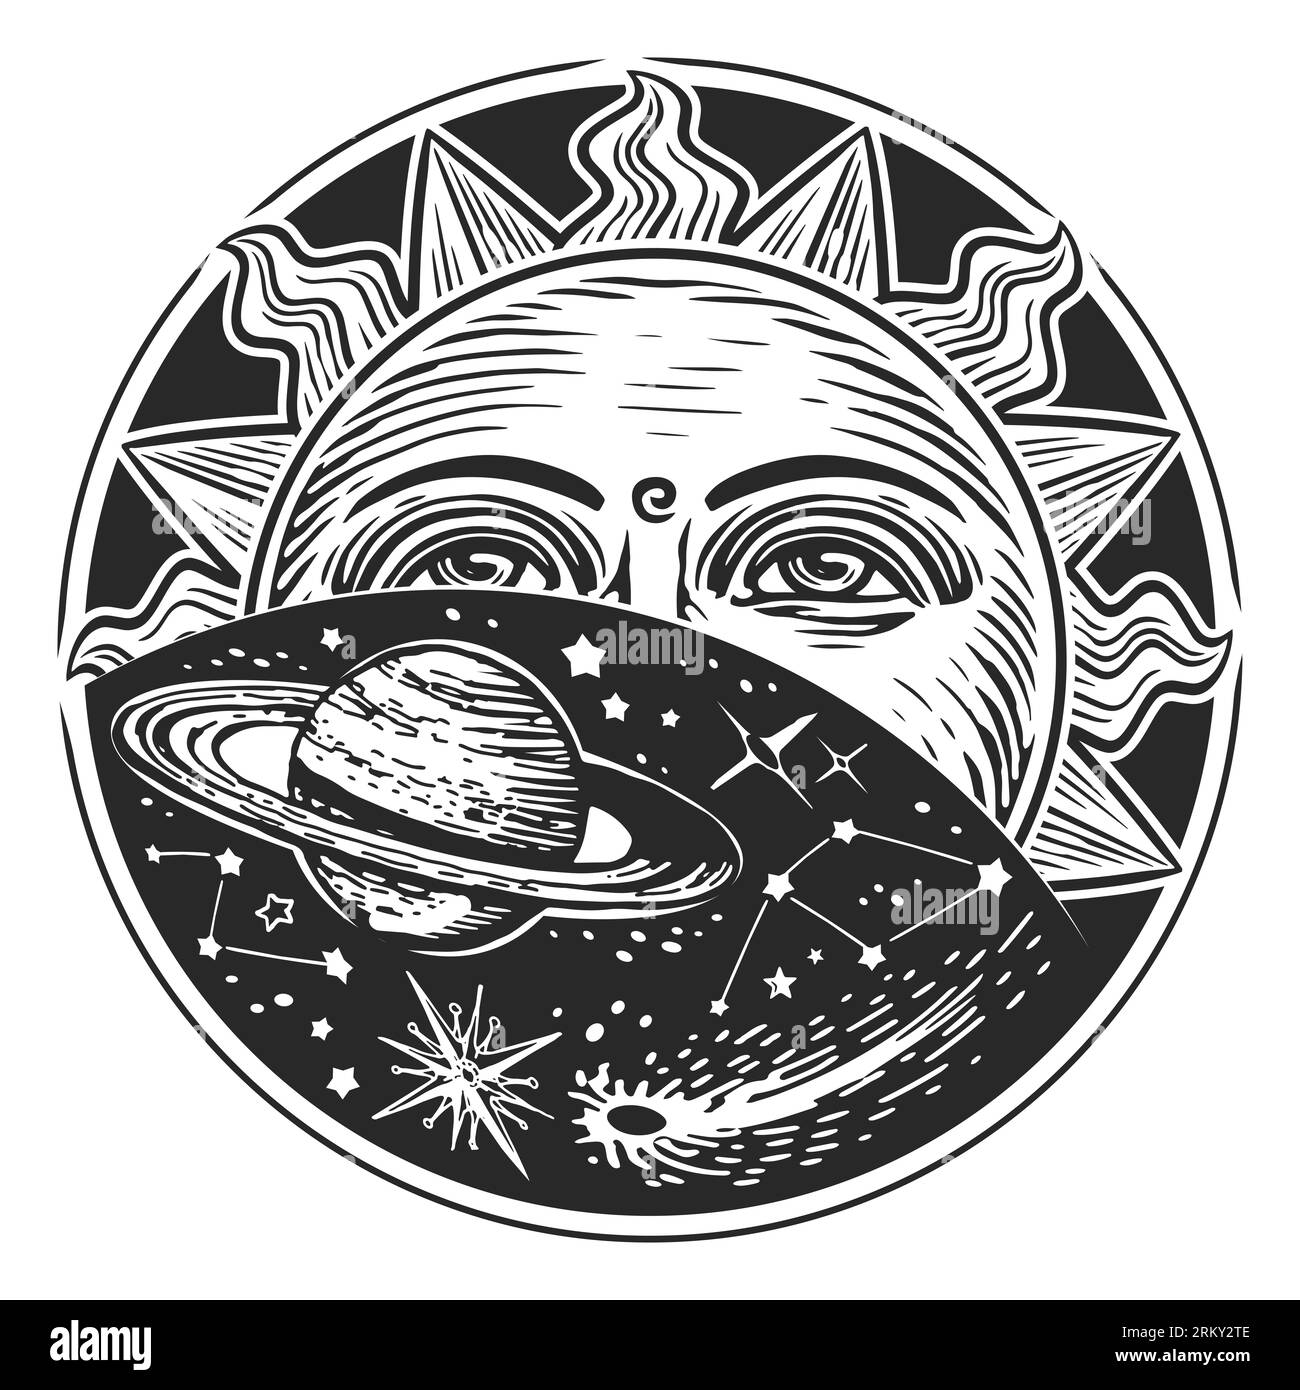 Esplorazione spaziale, concetto di astronomia. Sole, stelle e pianeti. Stile di incisione con illustrazioni vintage Foto Stock